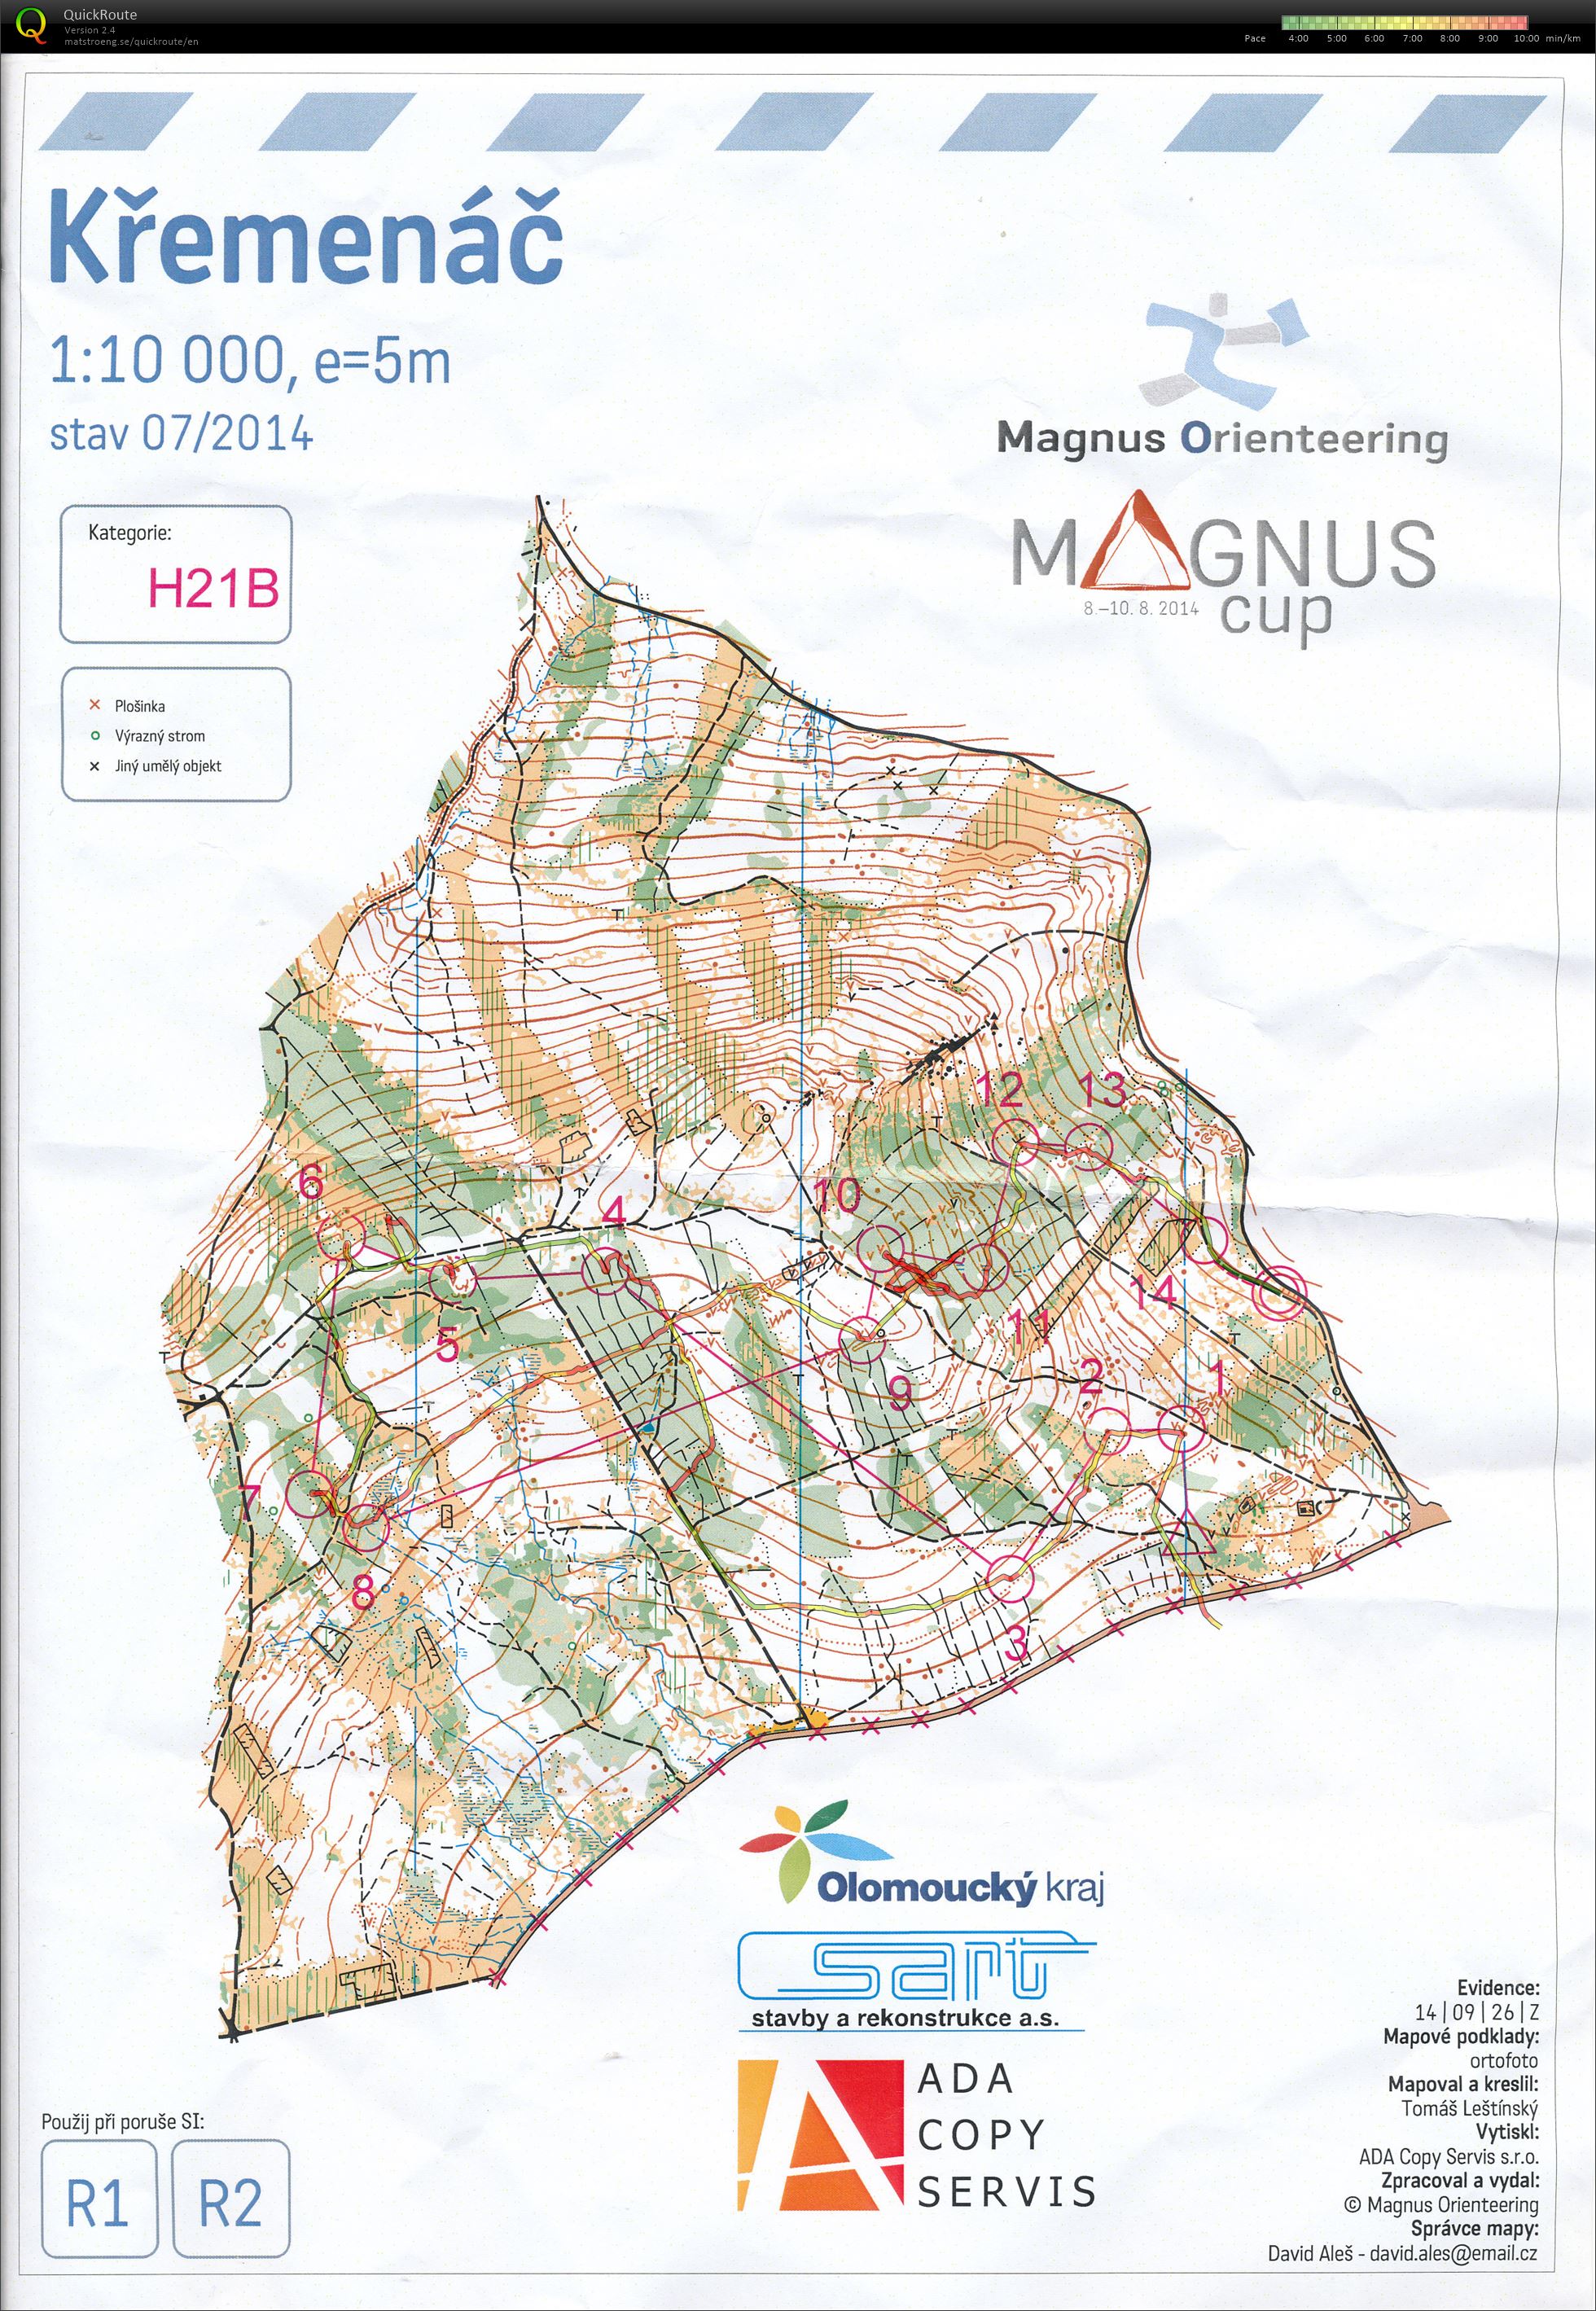 Magnus Cup - Etapa 1 (08-08-2014)